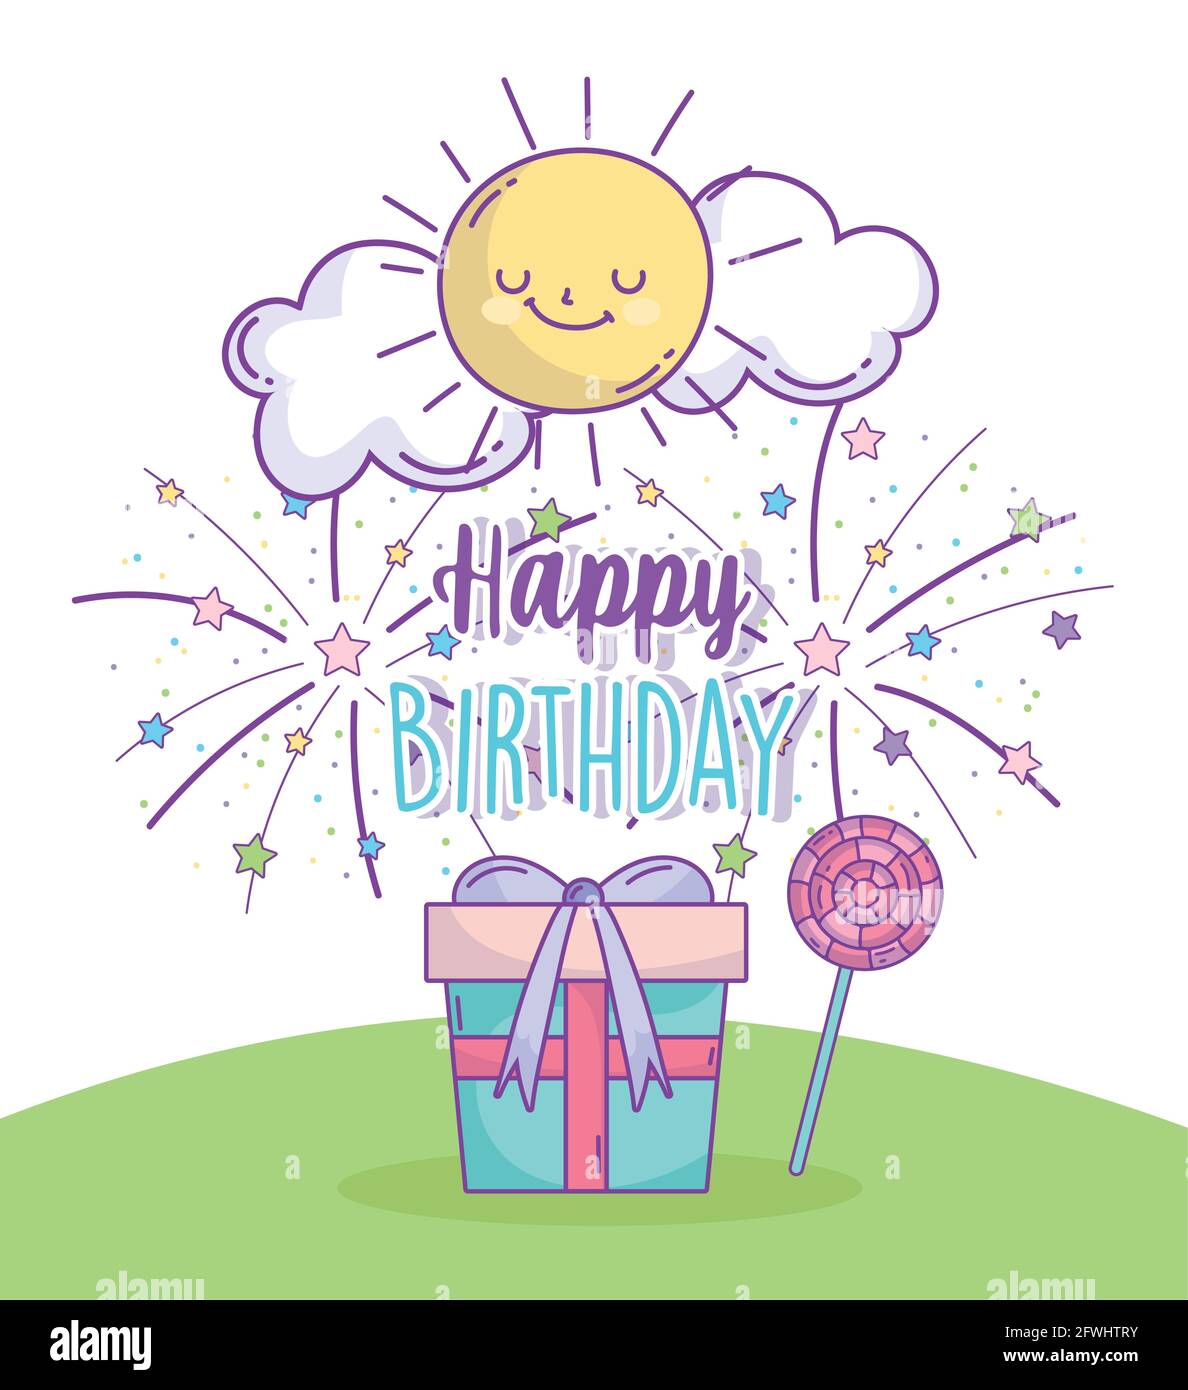 happy birthday party Stock Vector Image & Art - Alamy